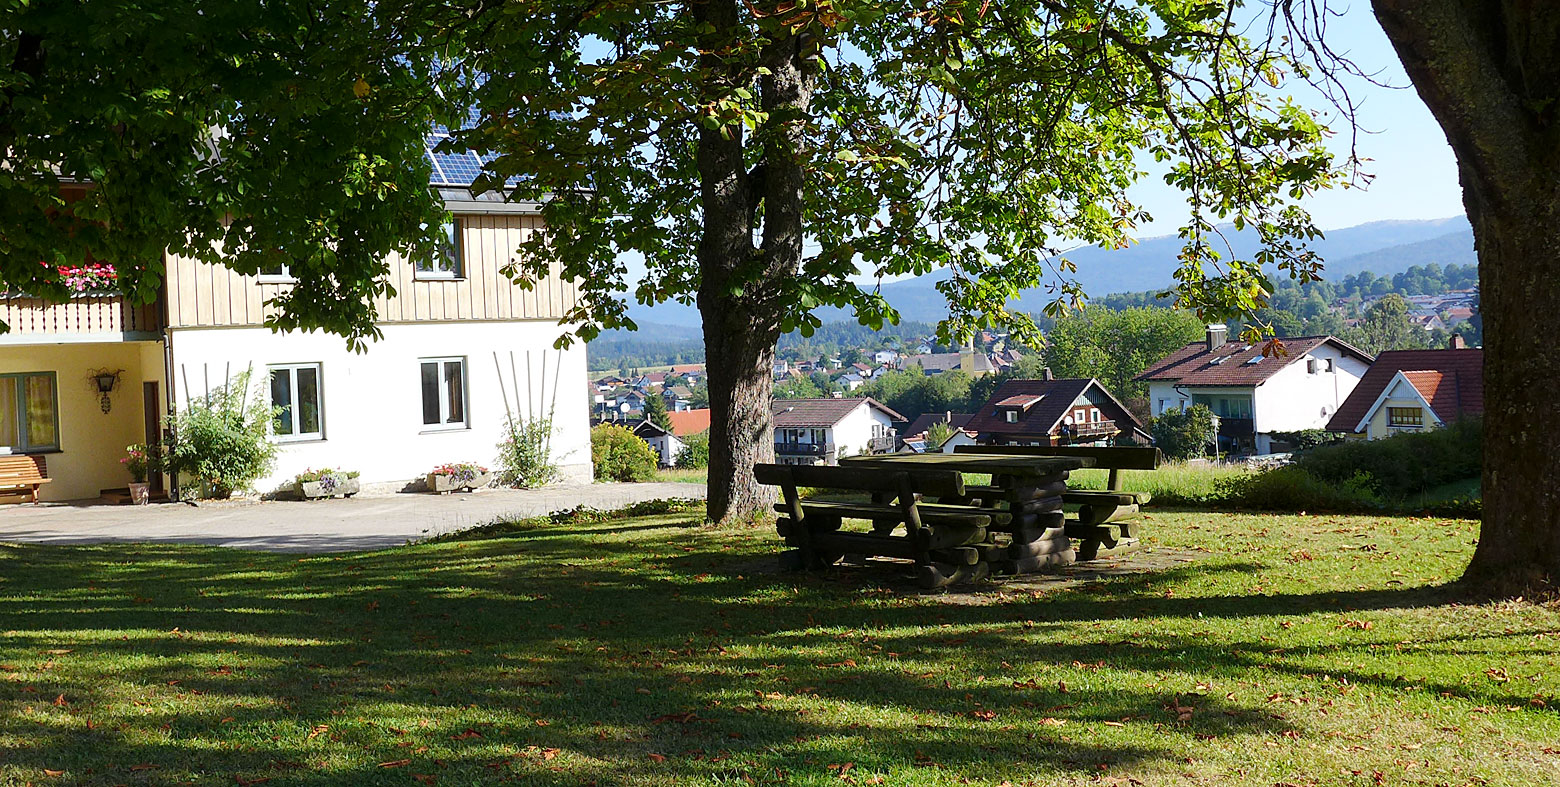 Urlaub in Bayern - Ferienwohnungen in Frauenau Bayerischer Wald